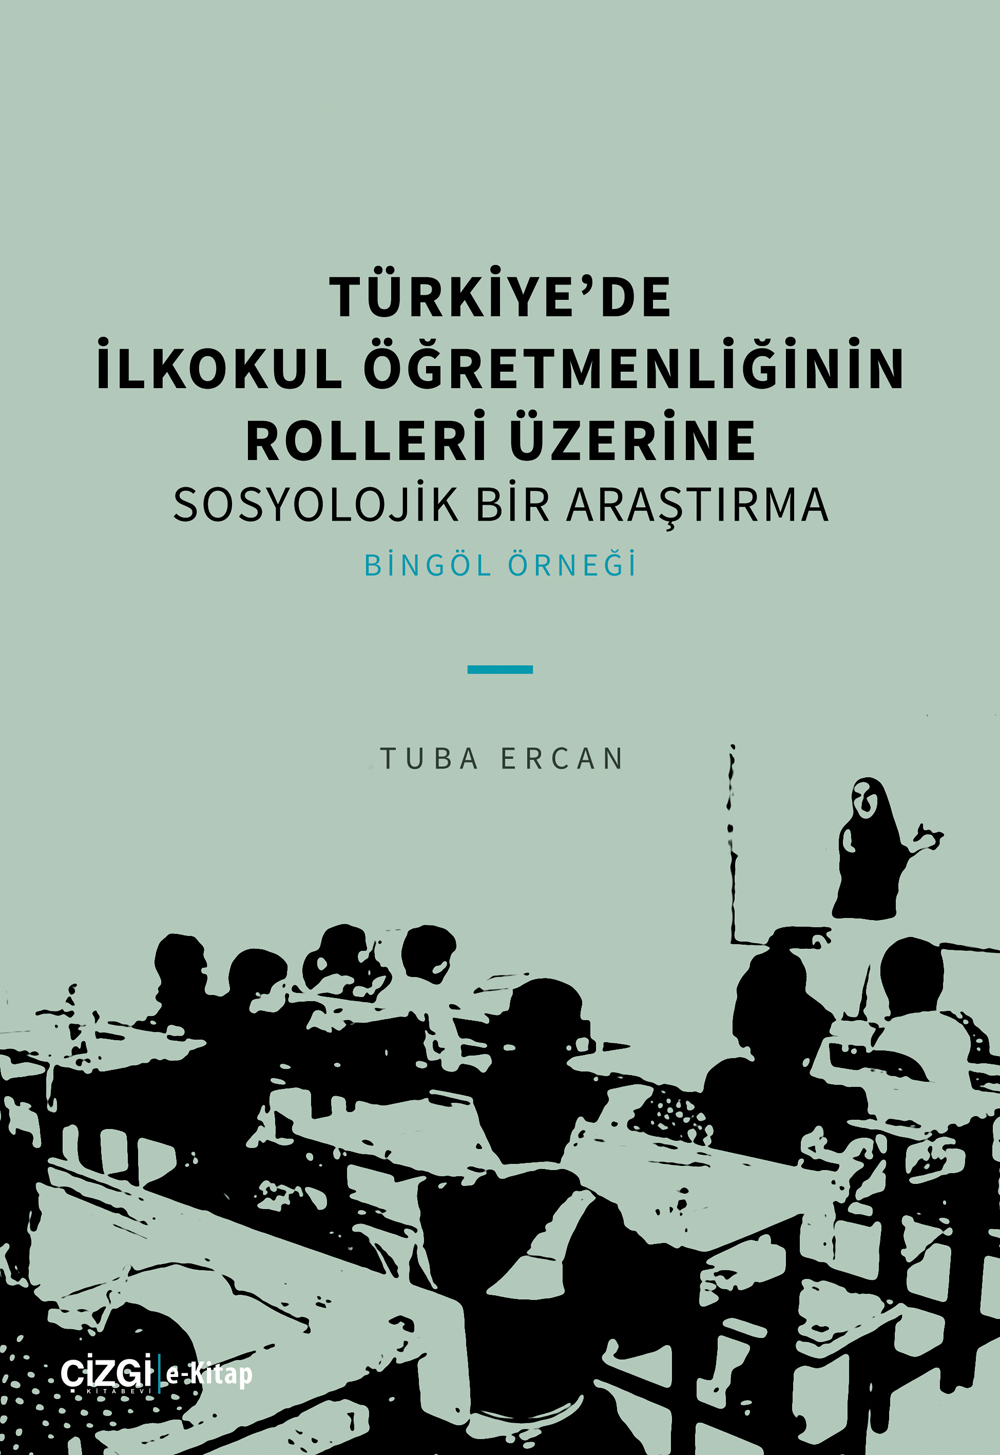 libraryturk.com türkiyede ilkokul öğretmenliğinin rolleri üzerine sosyolojik bir araştırma - bingöl örneği